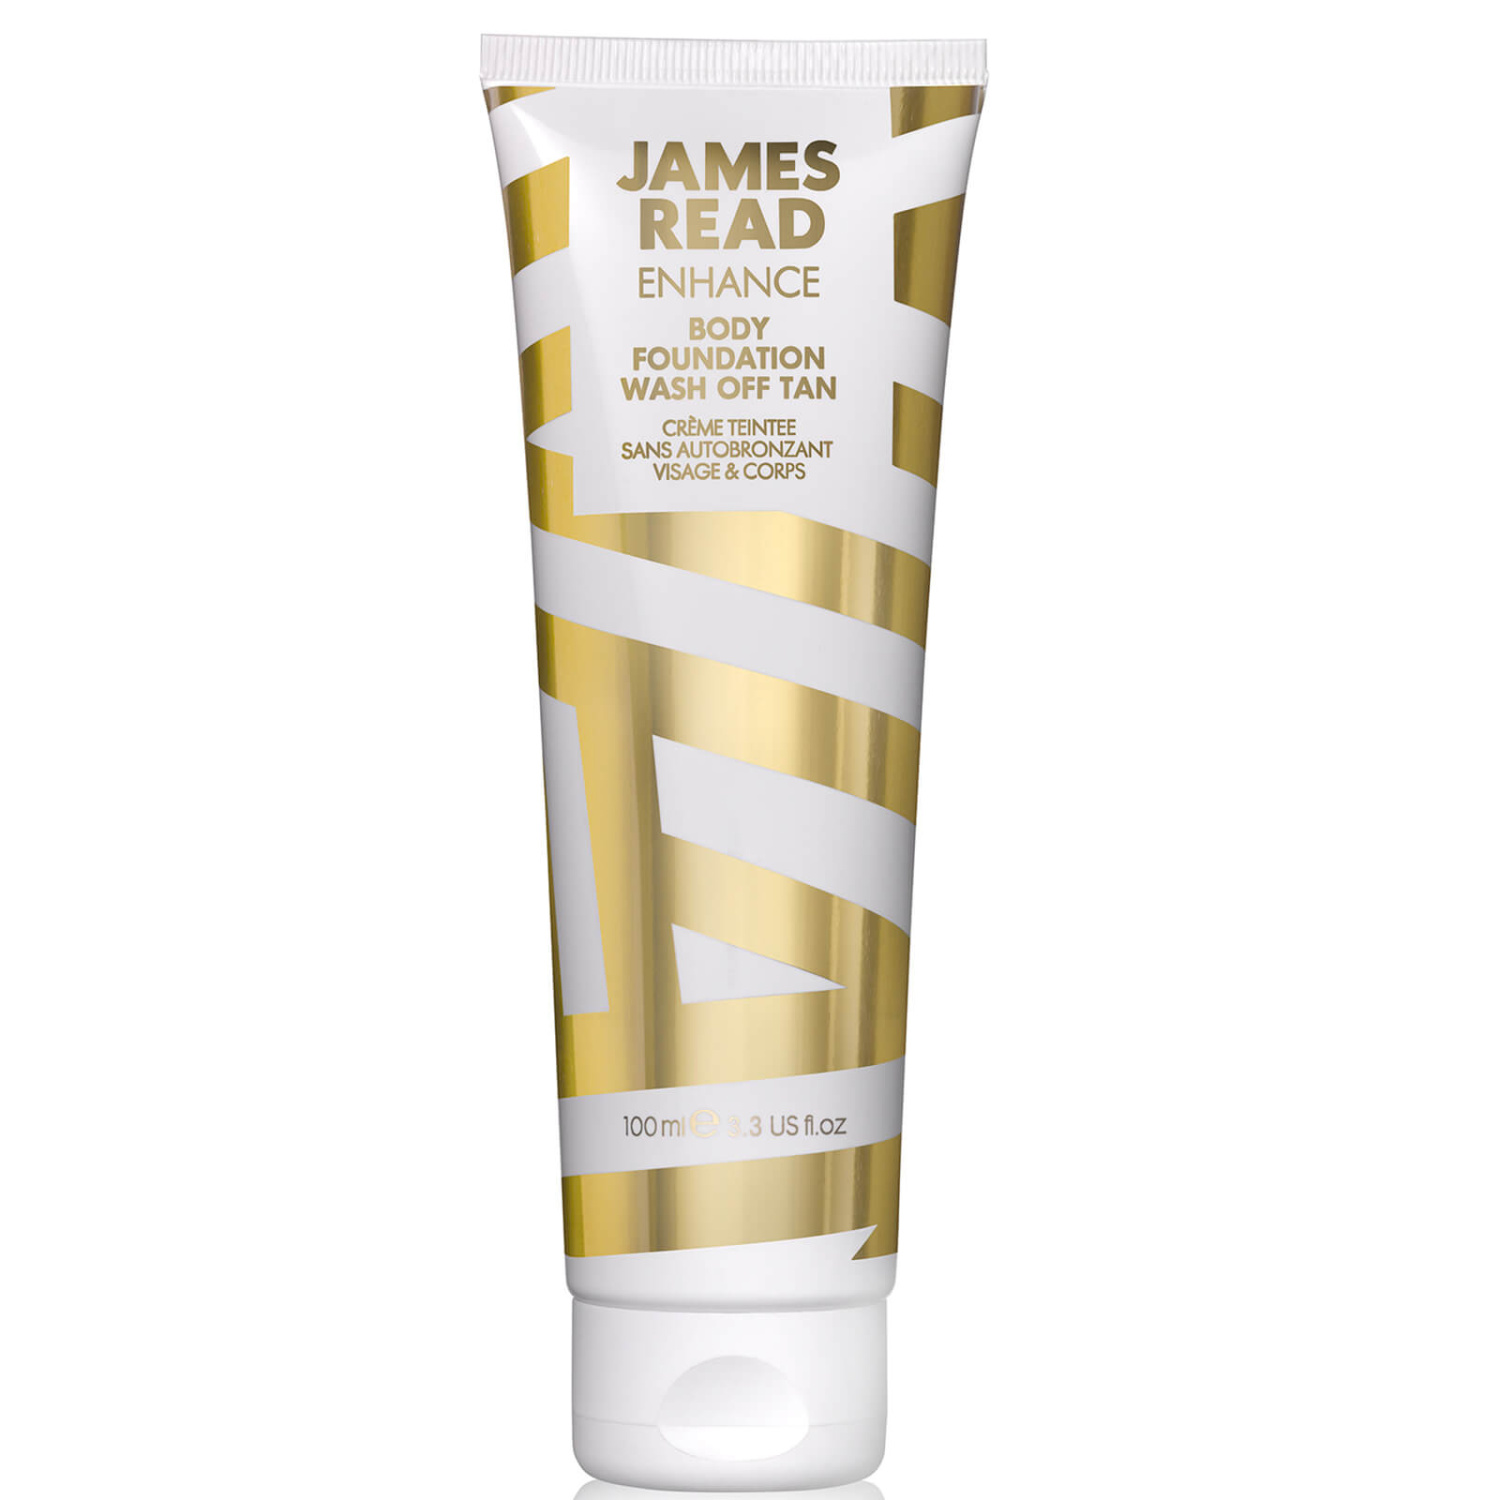 James Read Body Foundation Wash Off Tan Face and Body 100ml - интернет-магазин профессиональной косметики Spadream, изображение 45994